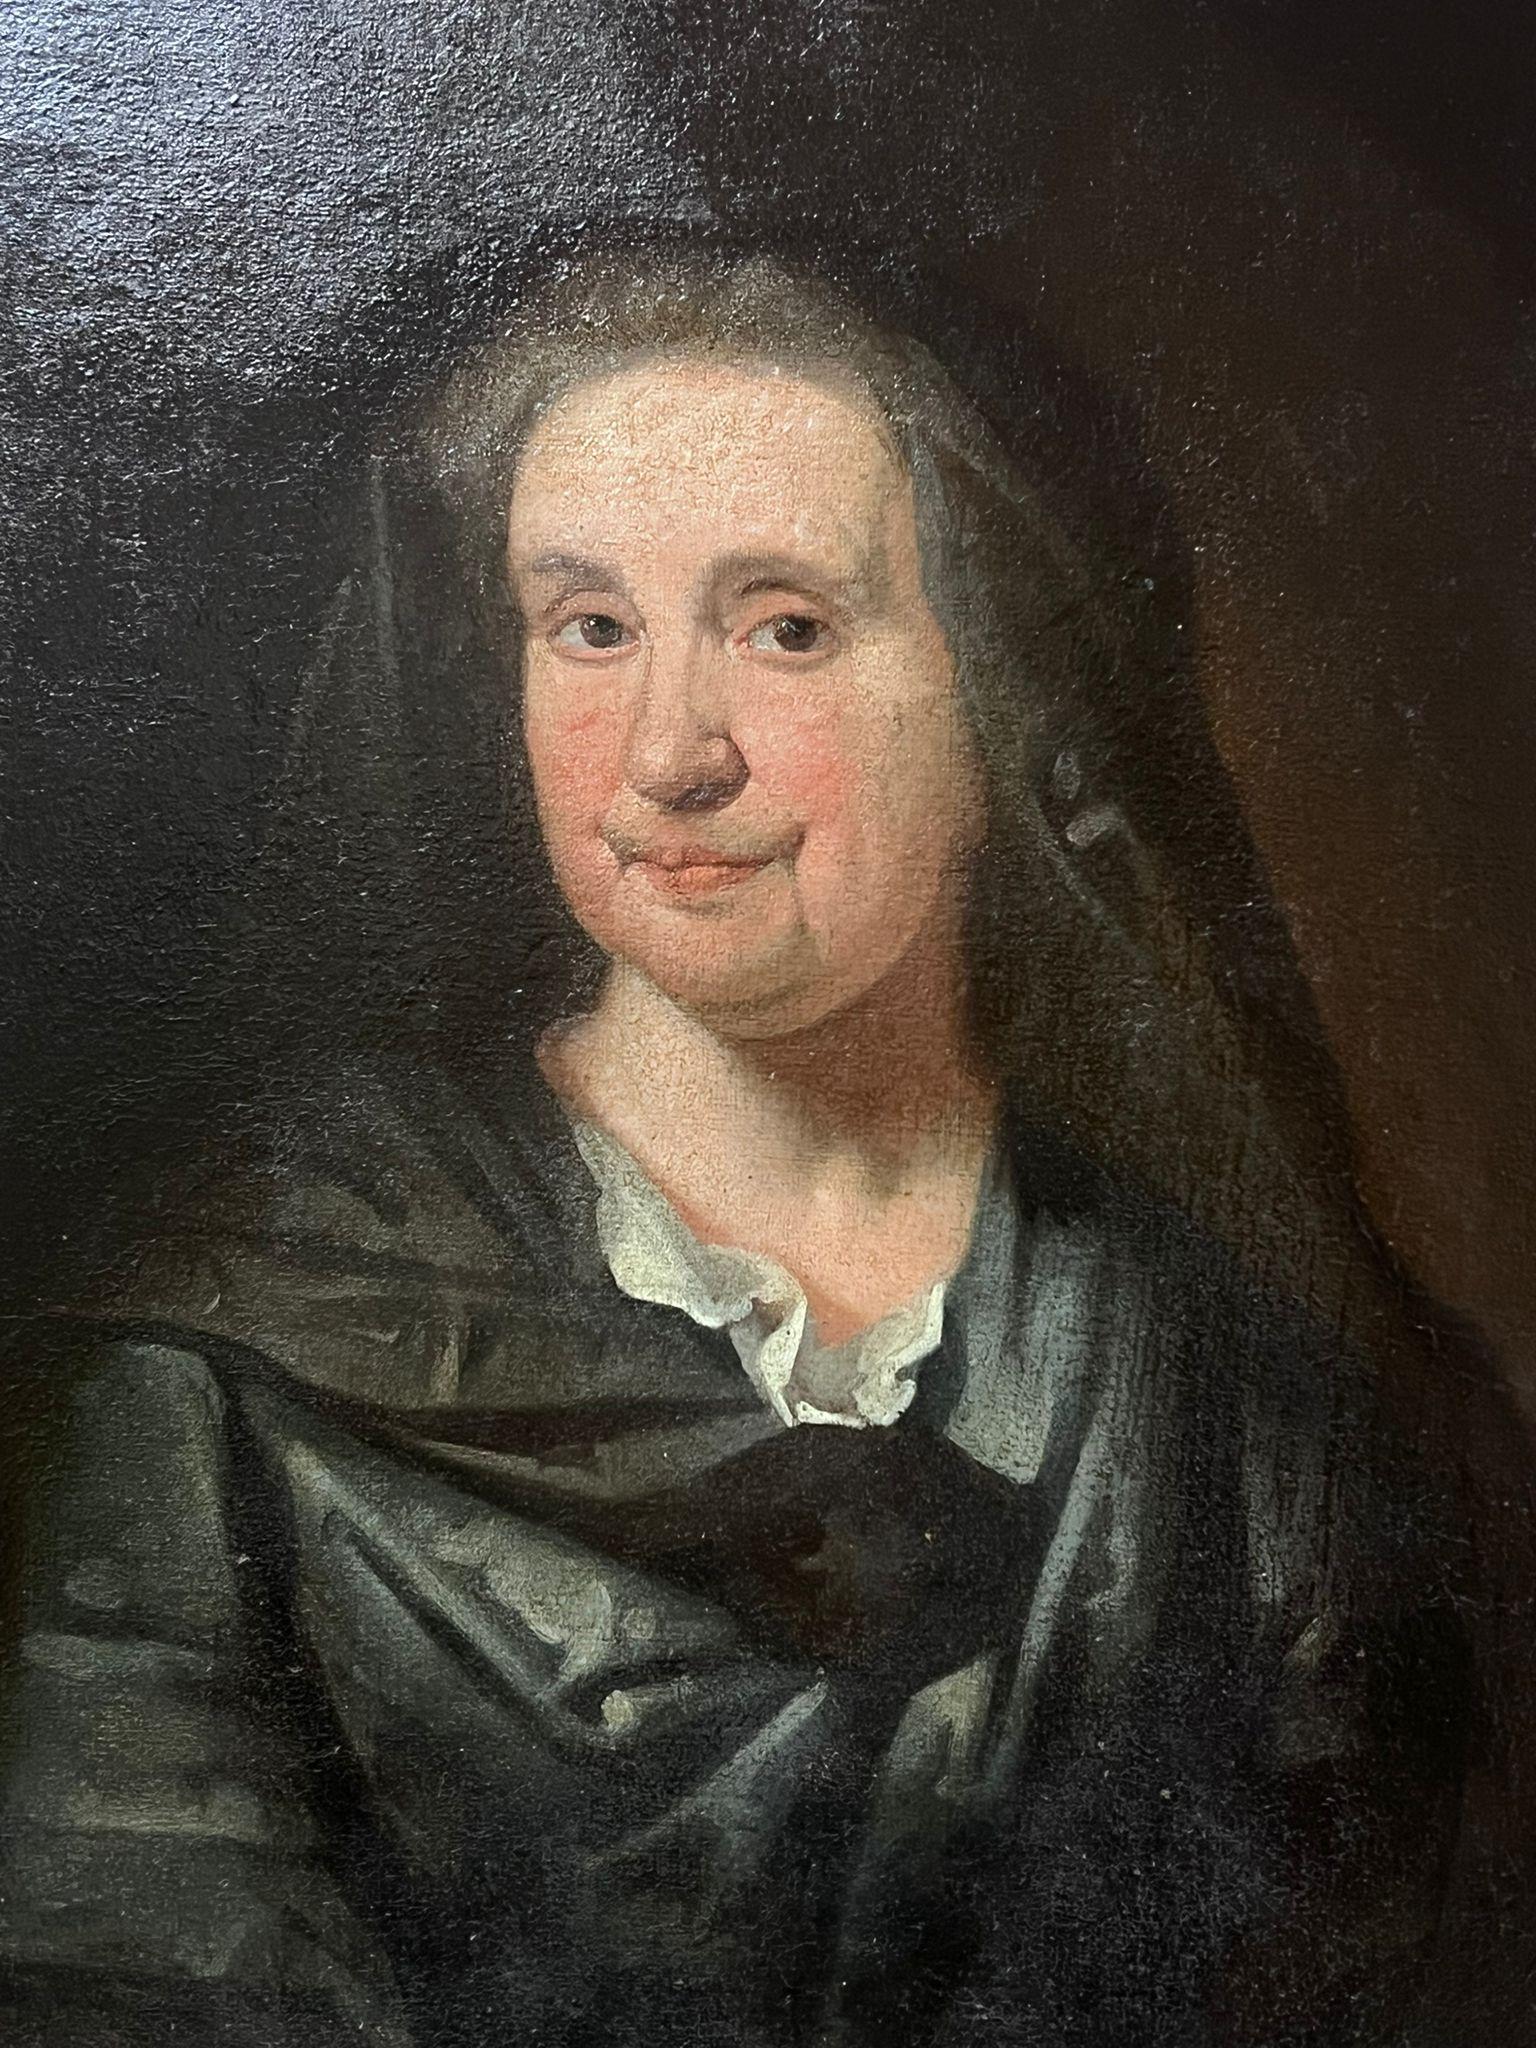 Portrait d'une femme
École anglaise, 18e siècle
huile sur toile, non encadrée
toile : 31 x 25 pouces
provenance : collection privée, UK
état : bon état et sain 